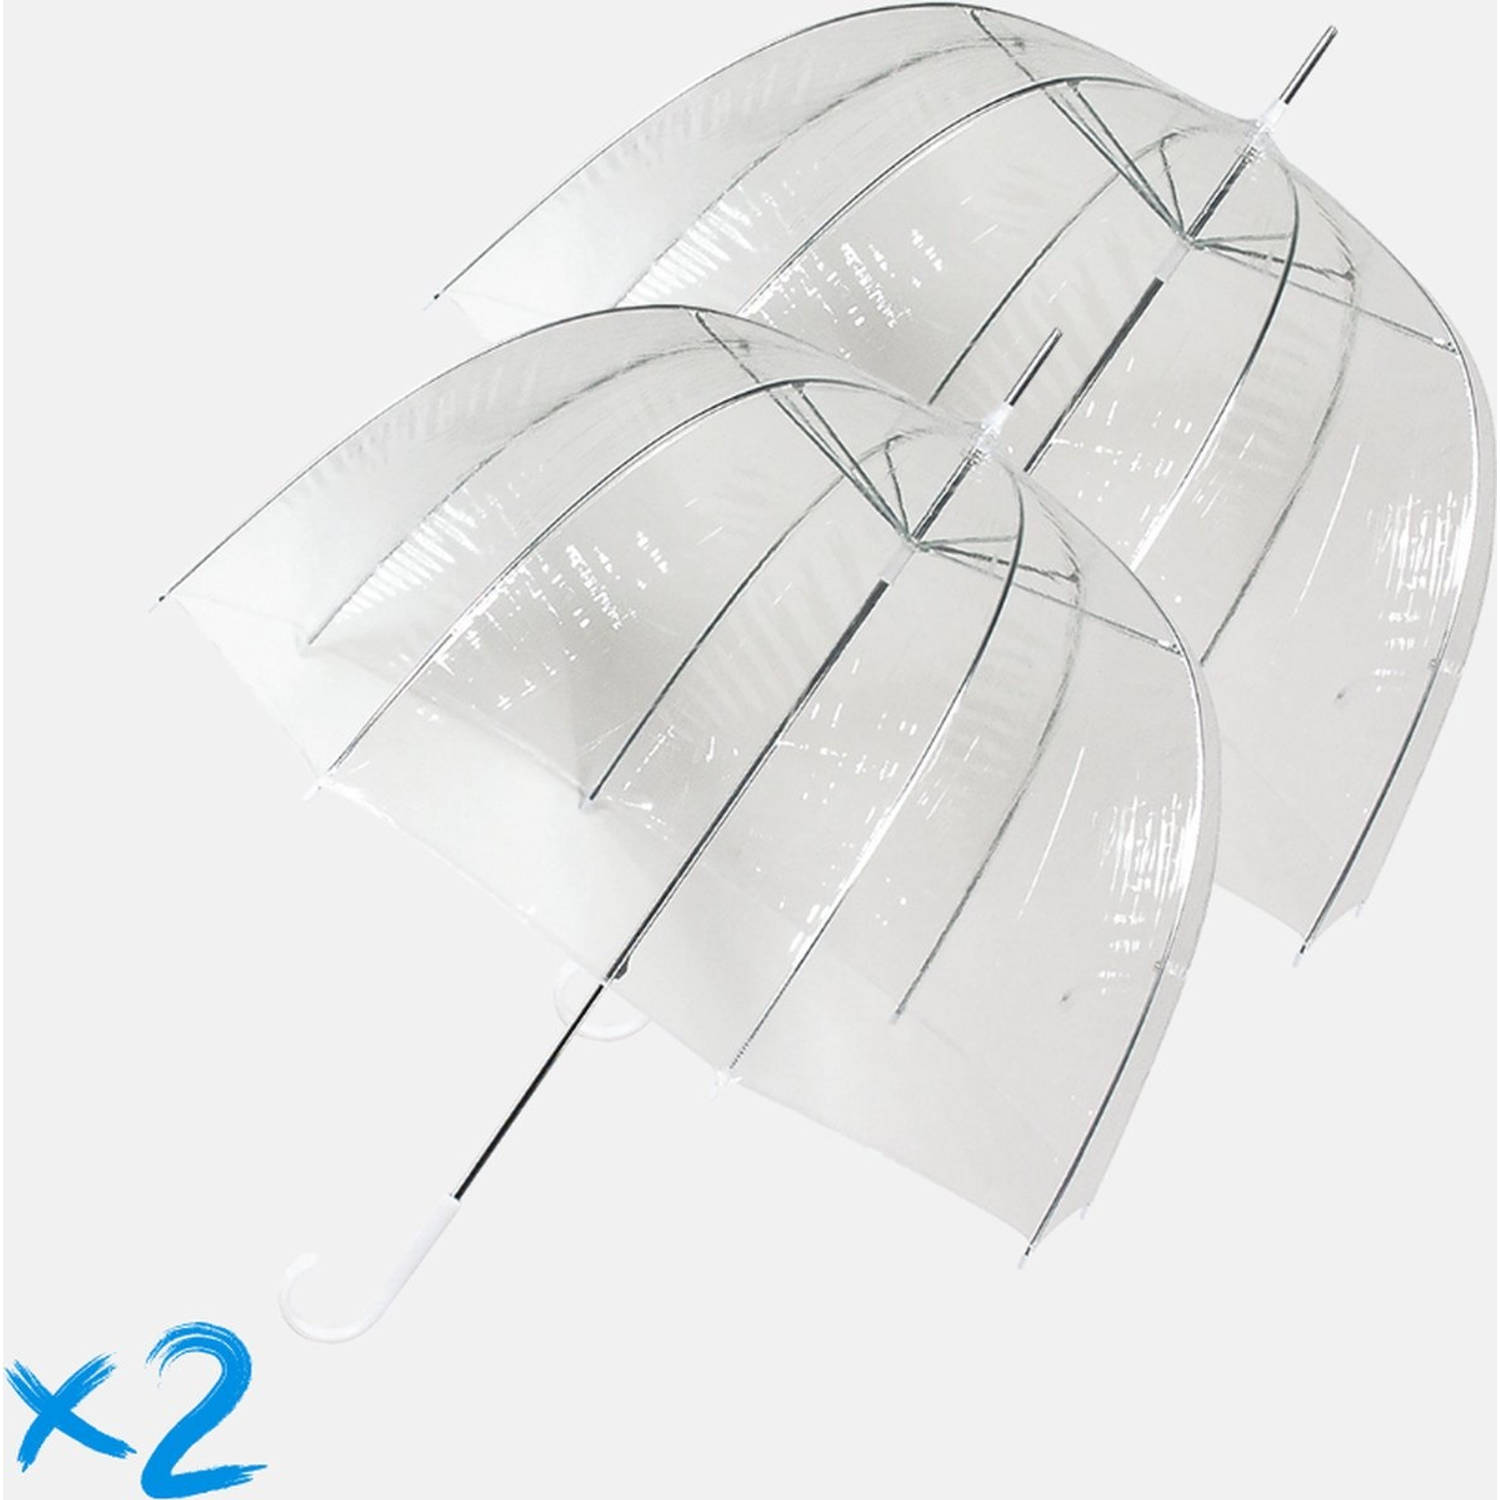 Beweegt niet Bedienen fluiten 2x Transparante koepelparaplu 75 cm - doorzichtige paraplu - trouwparaplu -  bruidsparaplu - stijlvol - plastic - | Blokker